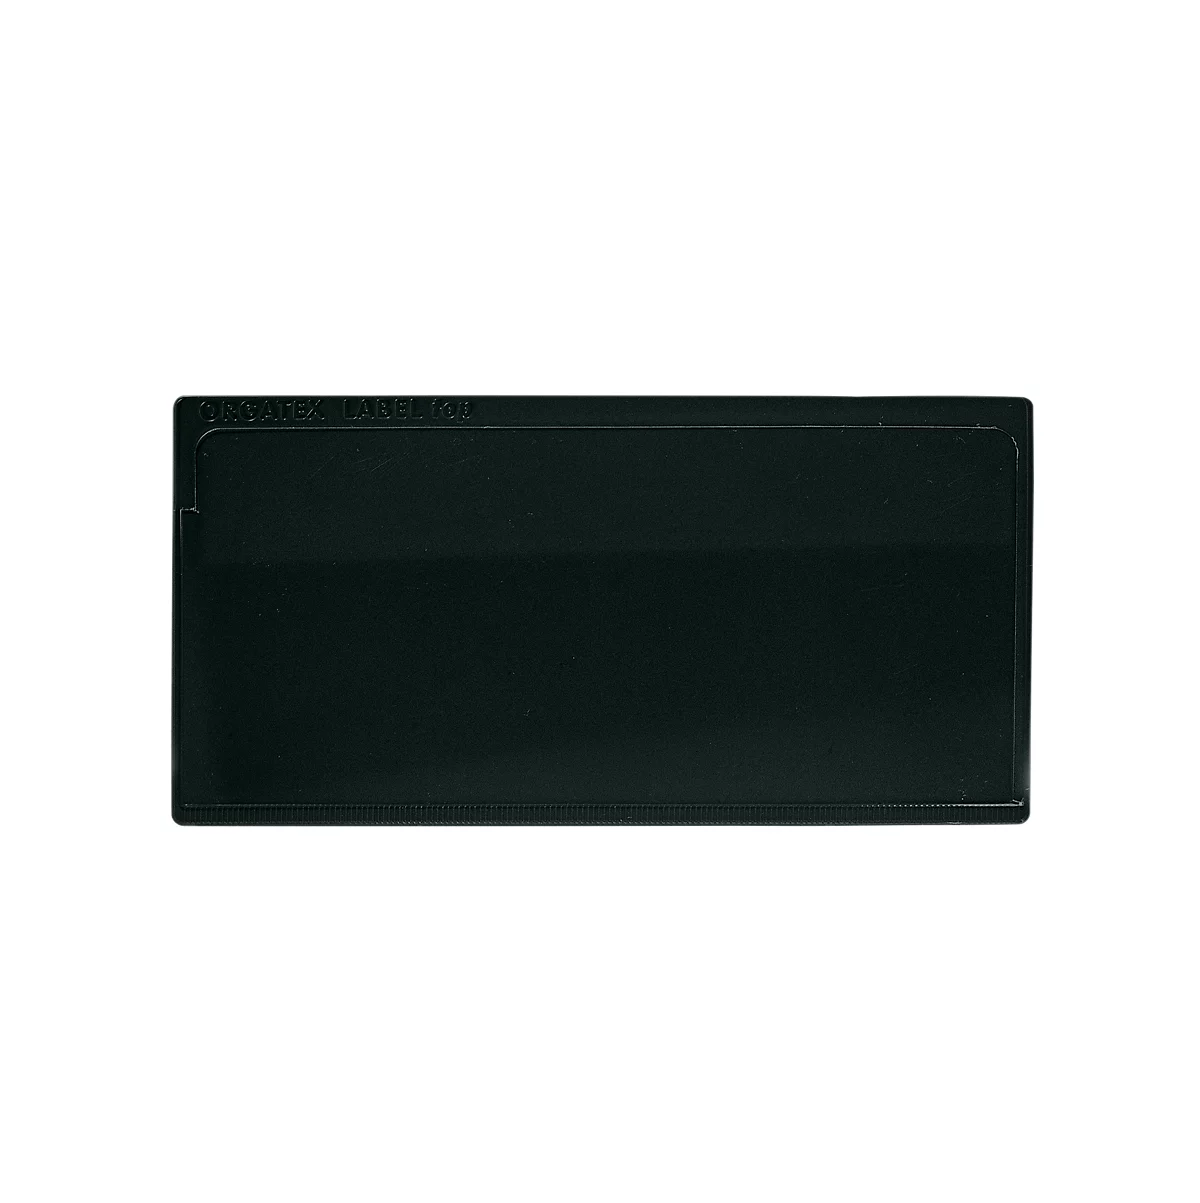 Etikettenhoes Label TOP, magnetisch, 50 x 110, zwart, 50 stuks